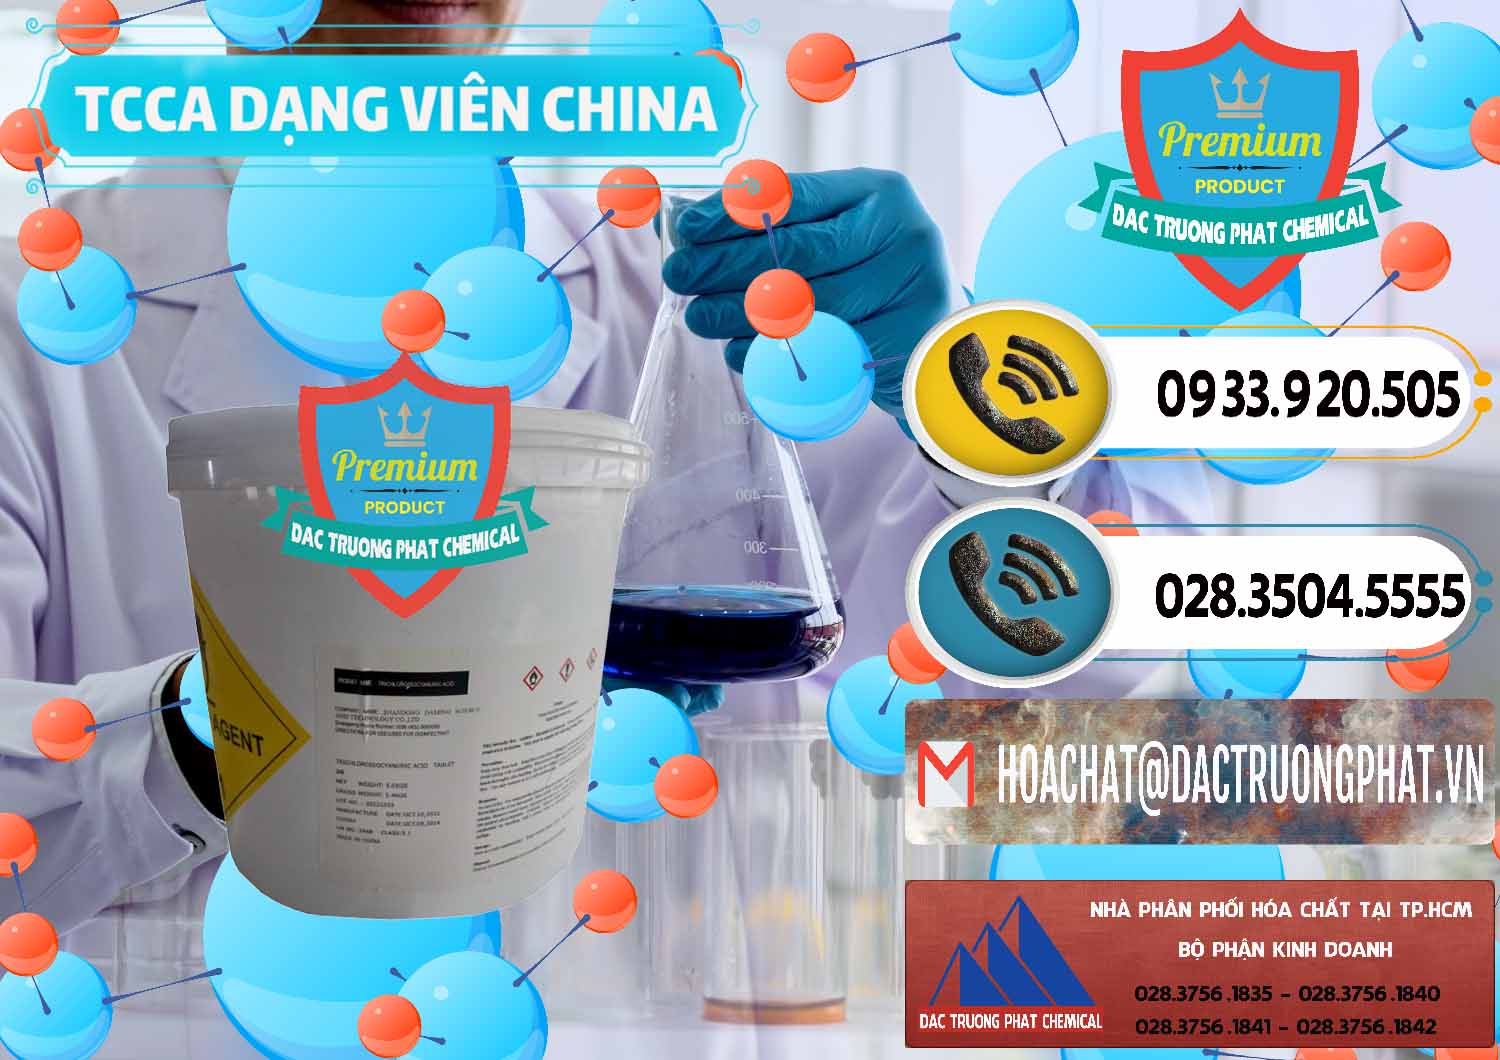 Chuyên cung cấp ( bán ) TCCA - Acid Trichloroisocyanuric Dạng Viên Thùng 5kg Trung Quốc China - 0379 - Cty chuyên bán ( cung cấp ) hóa chất tại TP.HCM - hoachatdetnhuom.vn